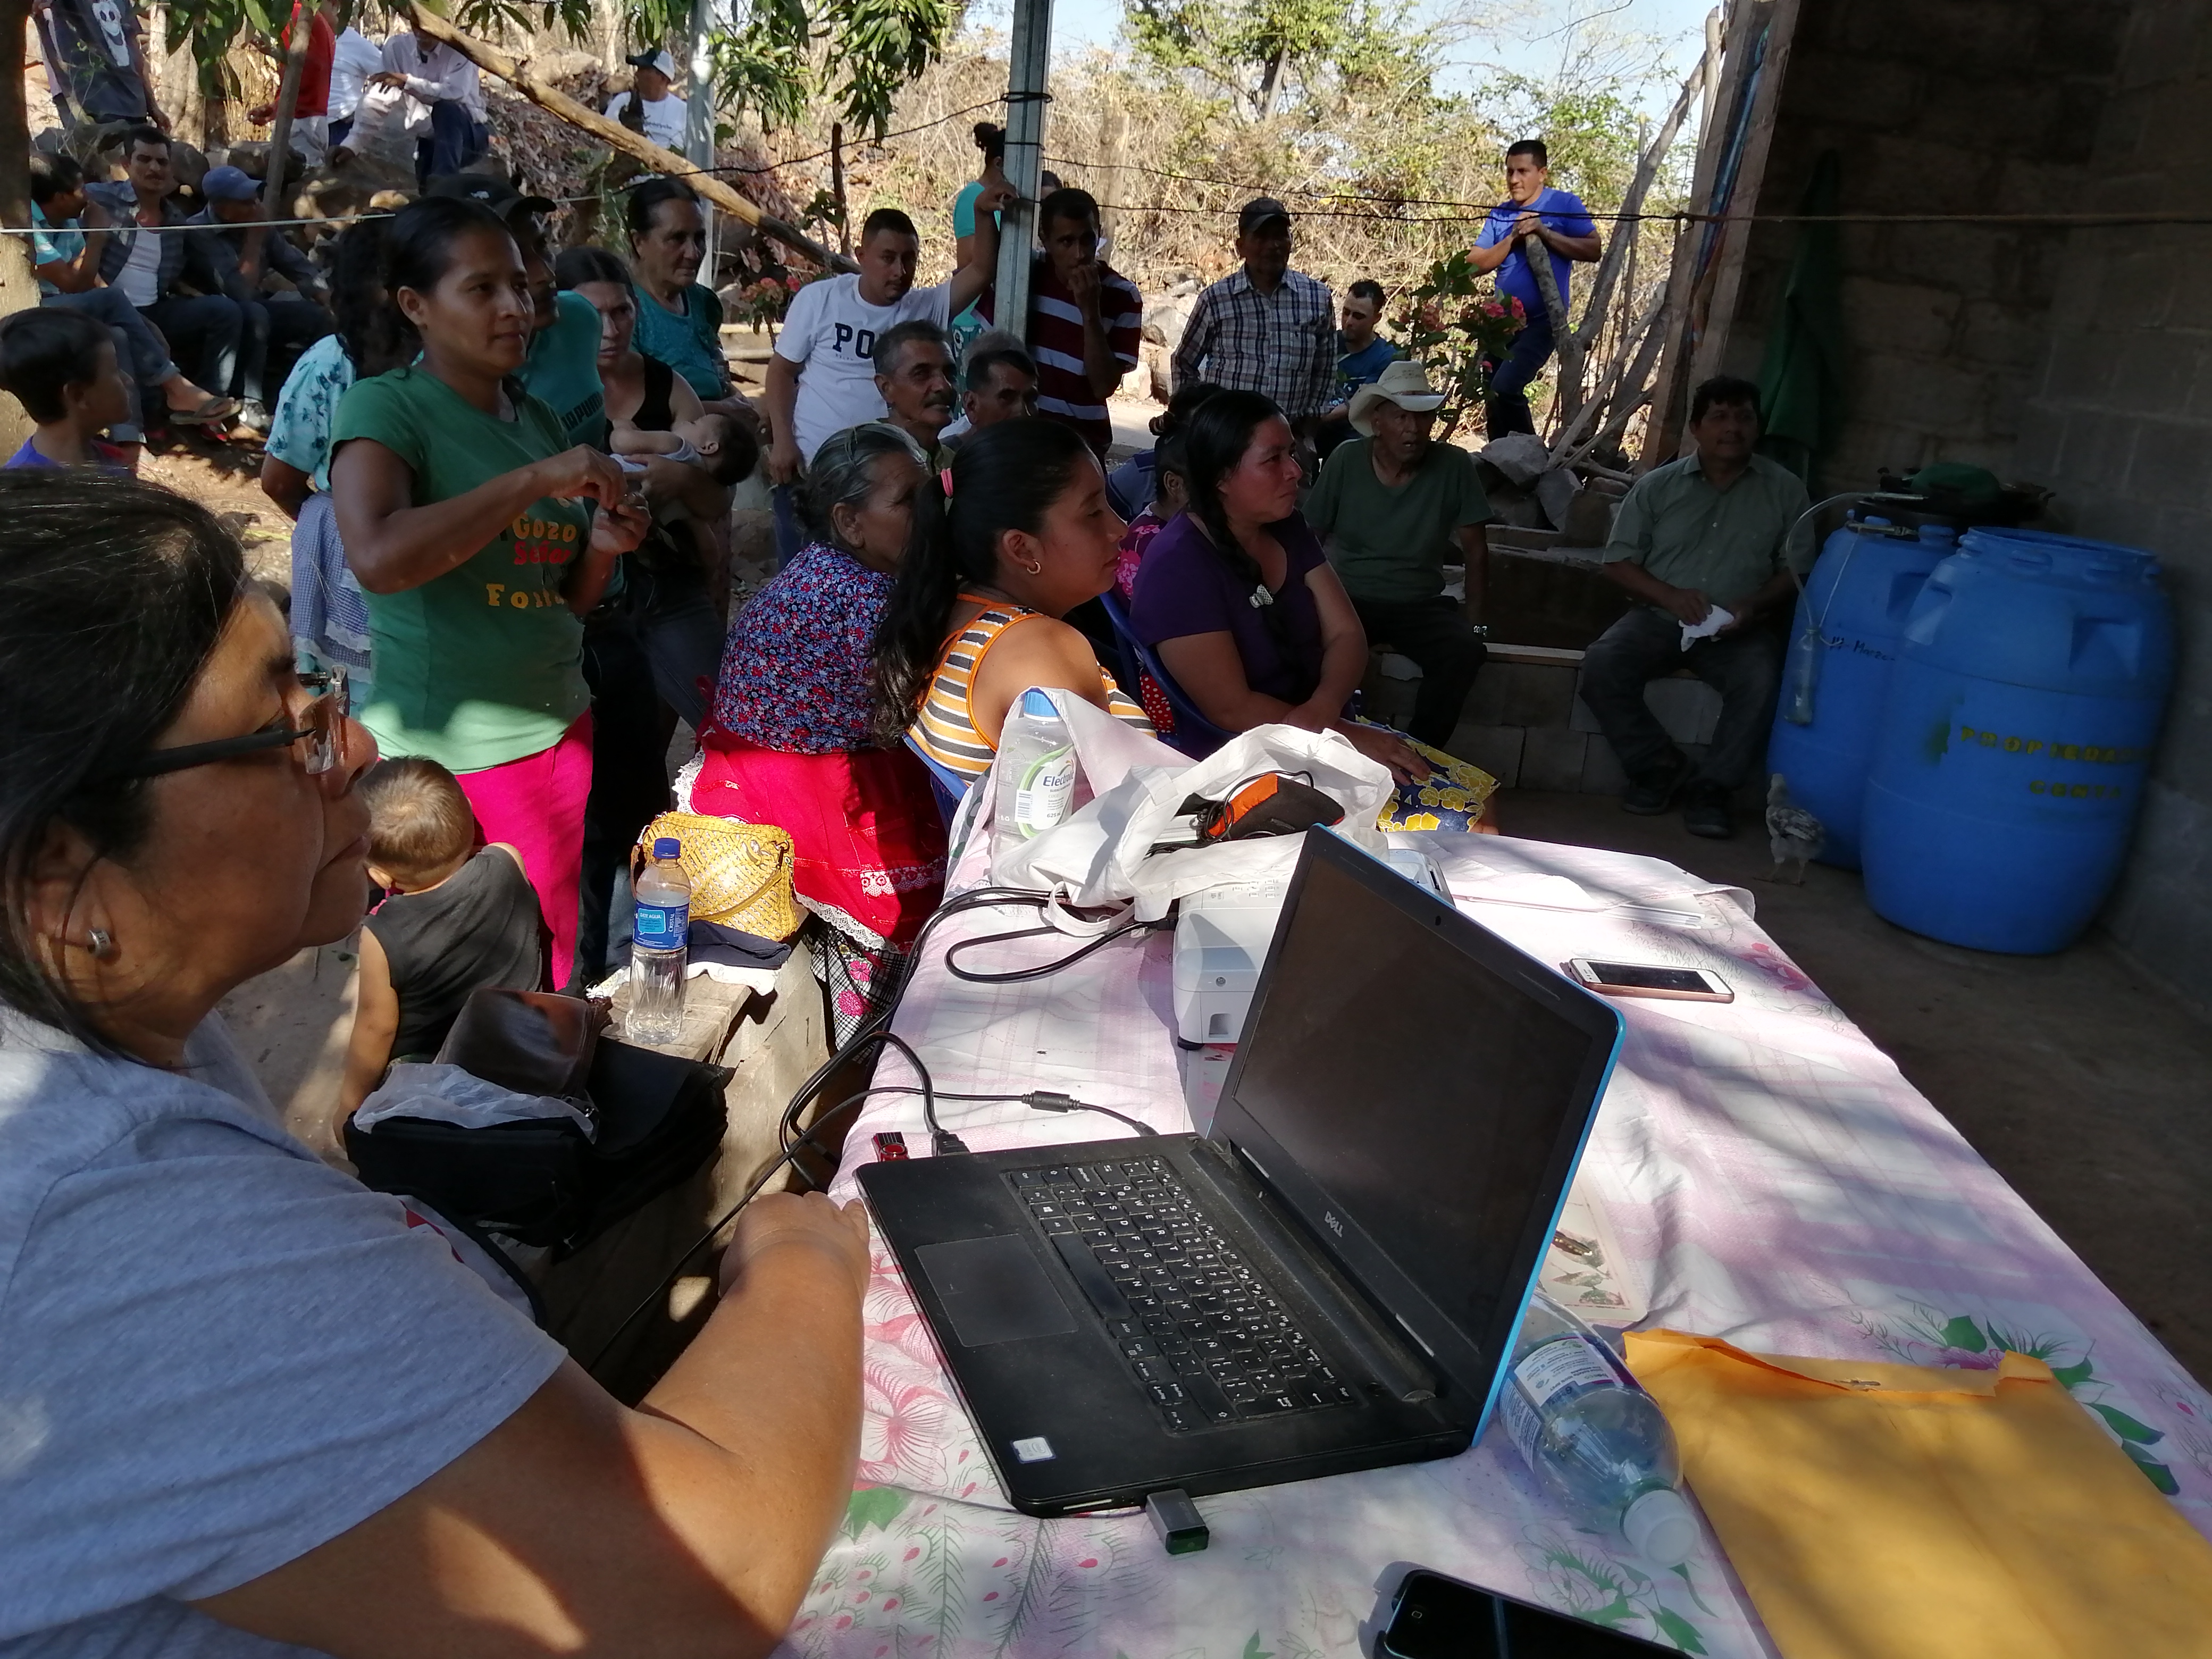 Mujeres Ambientalistas organizes a community meeting in El Cerrito Quezaltepeque